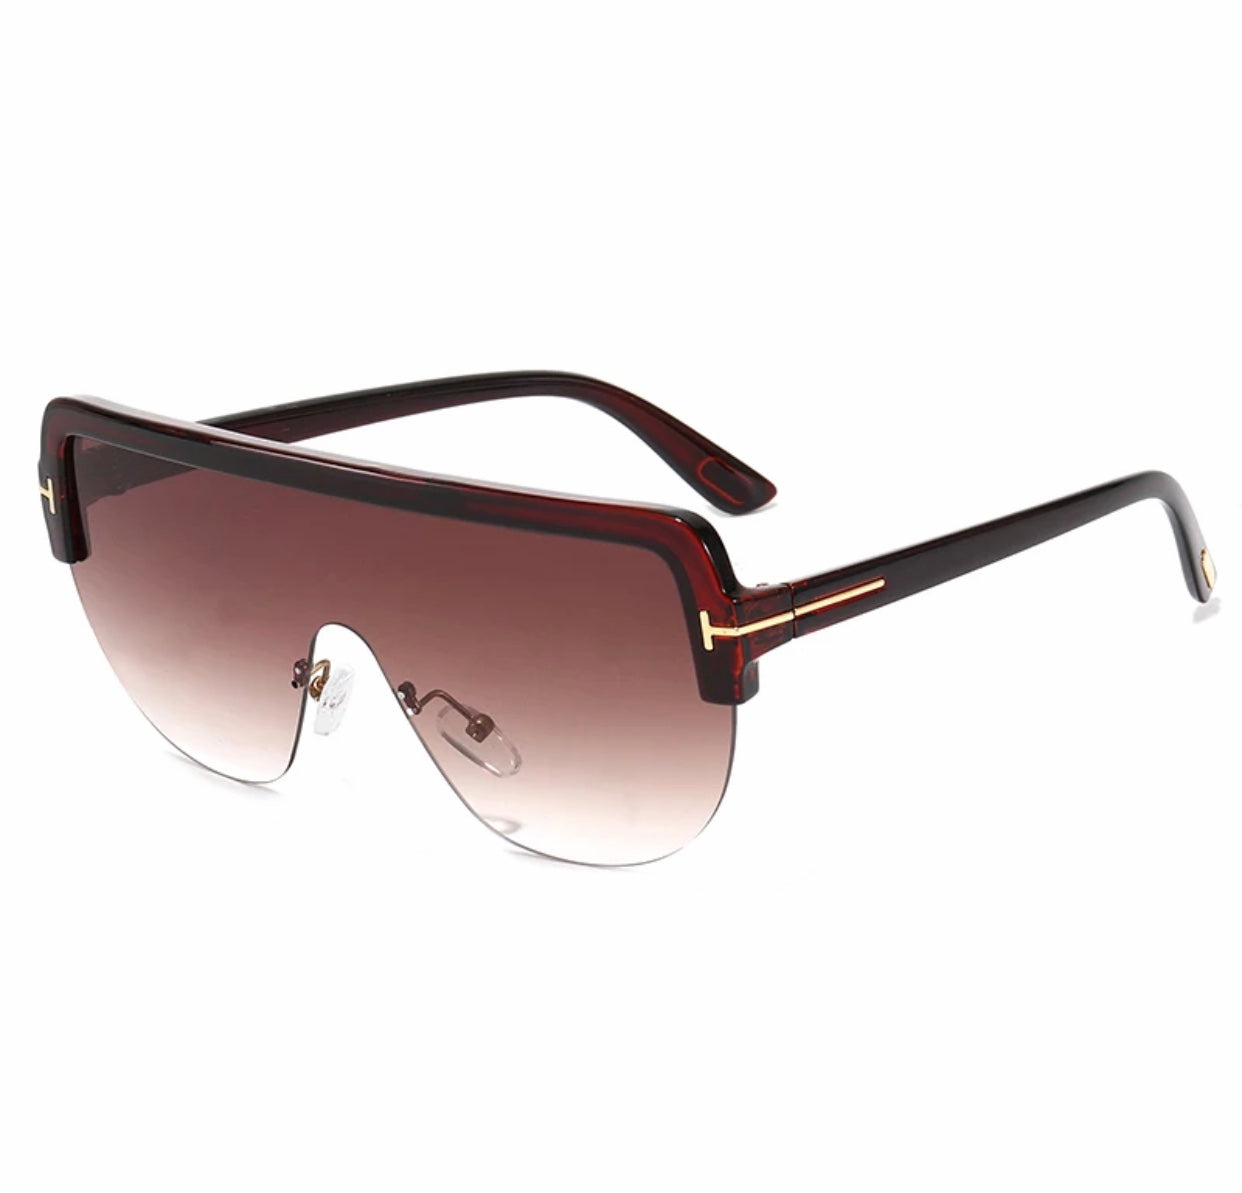 Sunglasses: Shield Sunglasses, acetate & technical satin — Fashion